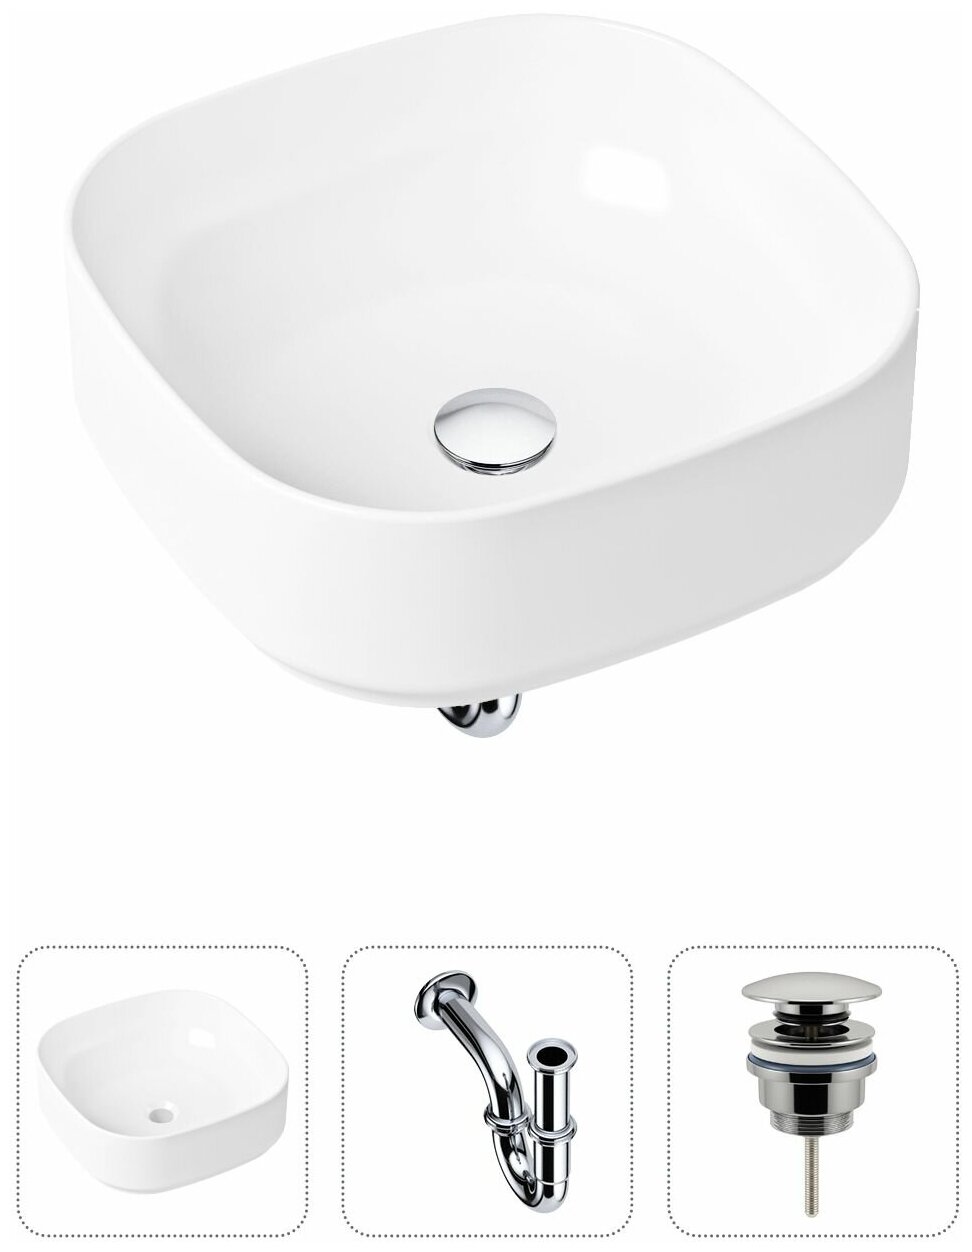 Комплект 3 в 1 Lavinia Boho Bathroom Sink 21520218: накладная фарфоровая раковина 40 см, металлический сифон, донный клапан